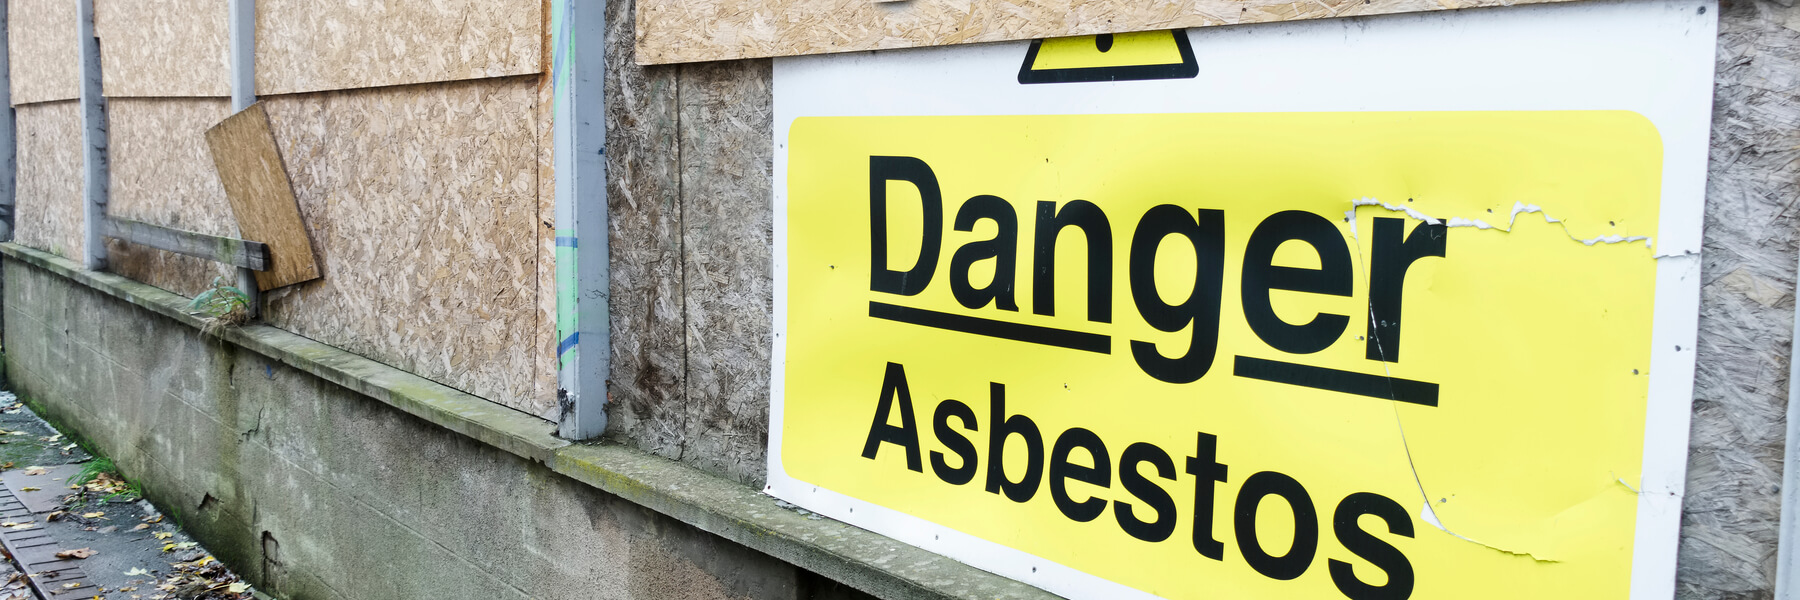 Asbestos Exposure Through Building Materials